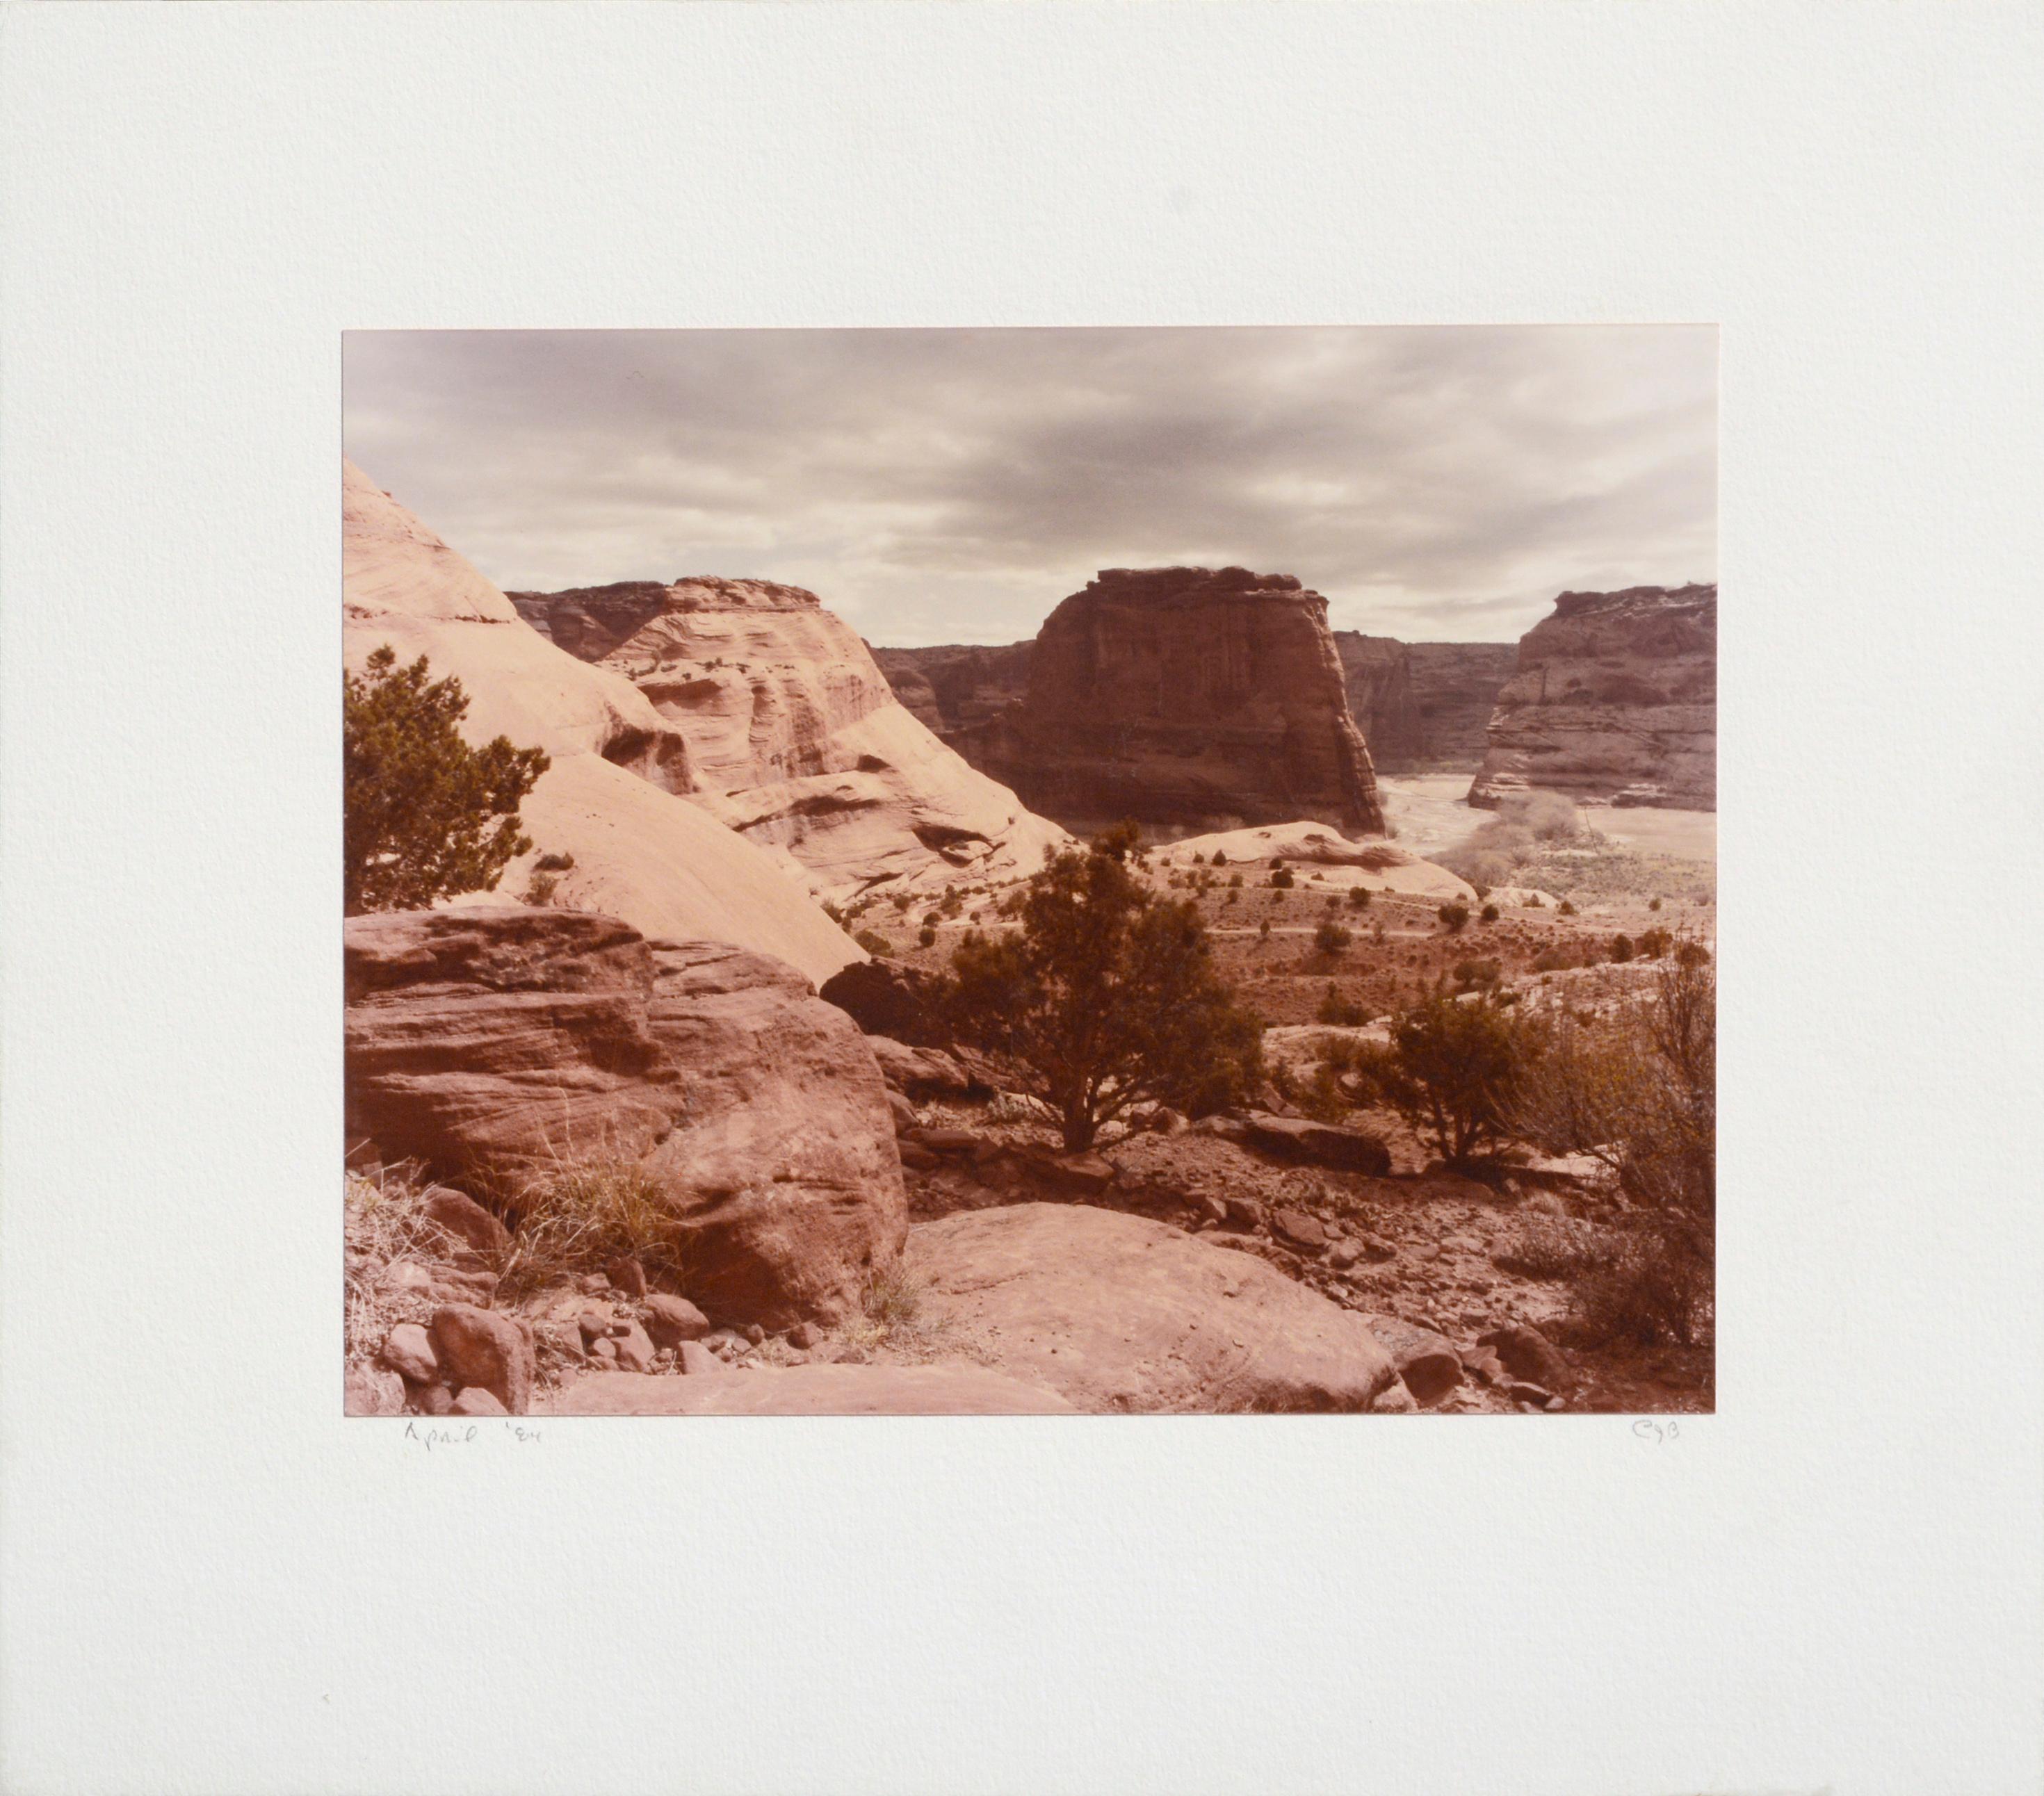 "Canyon de Chelle" #2 - Desert Landscape Photograph